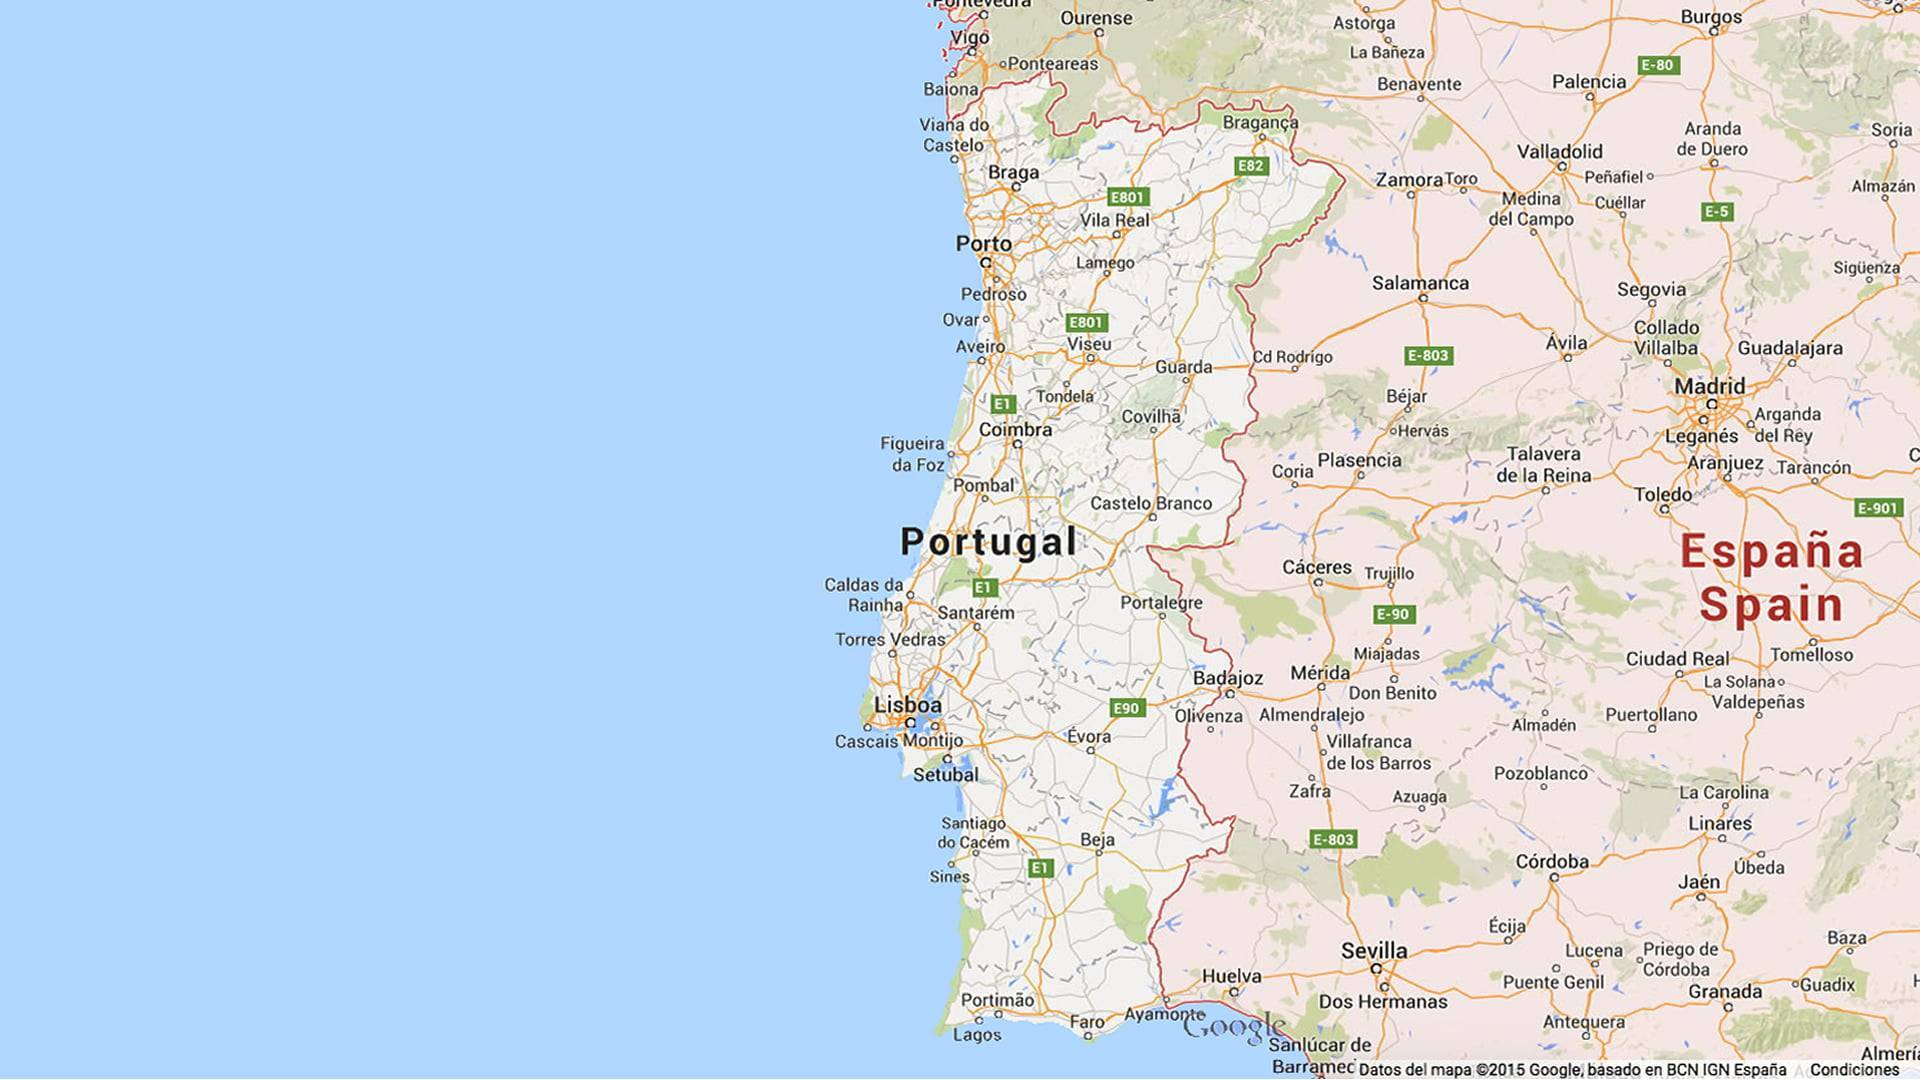 Список самых загруженных аэропортов португалии